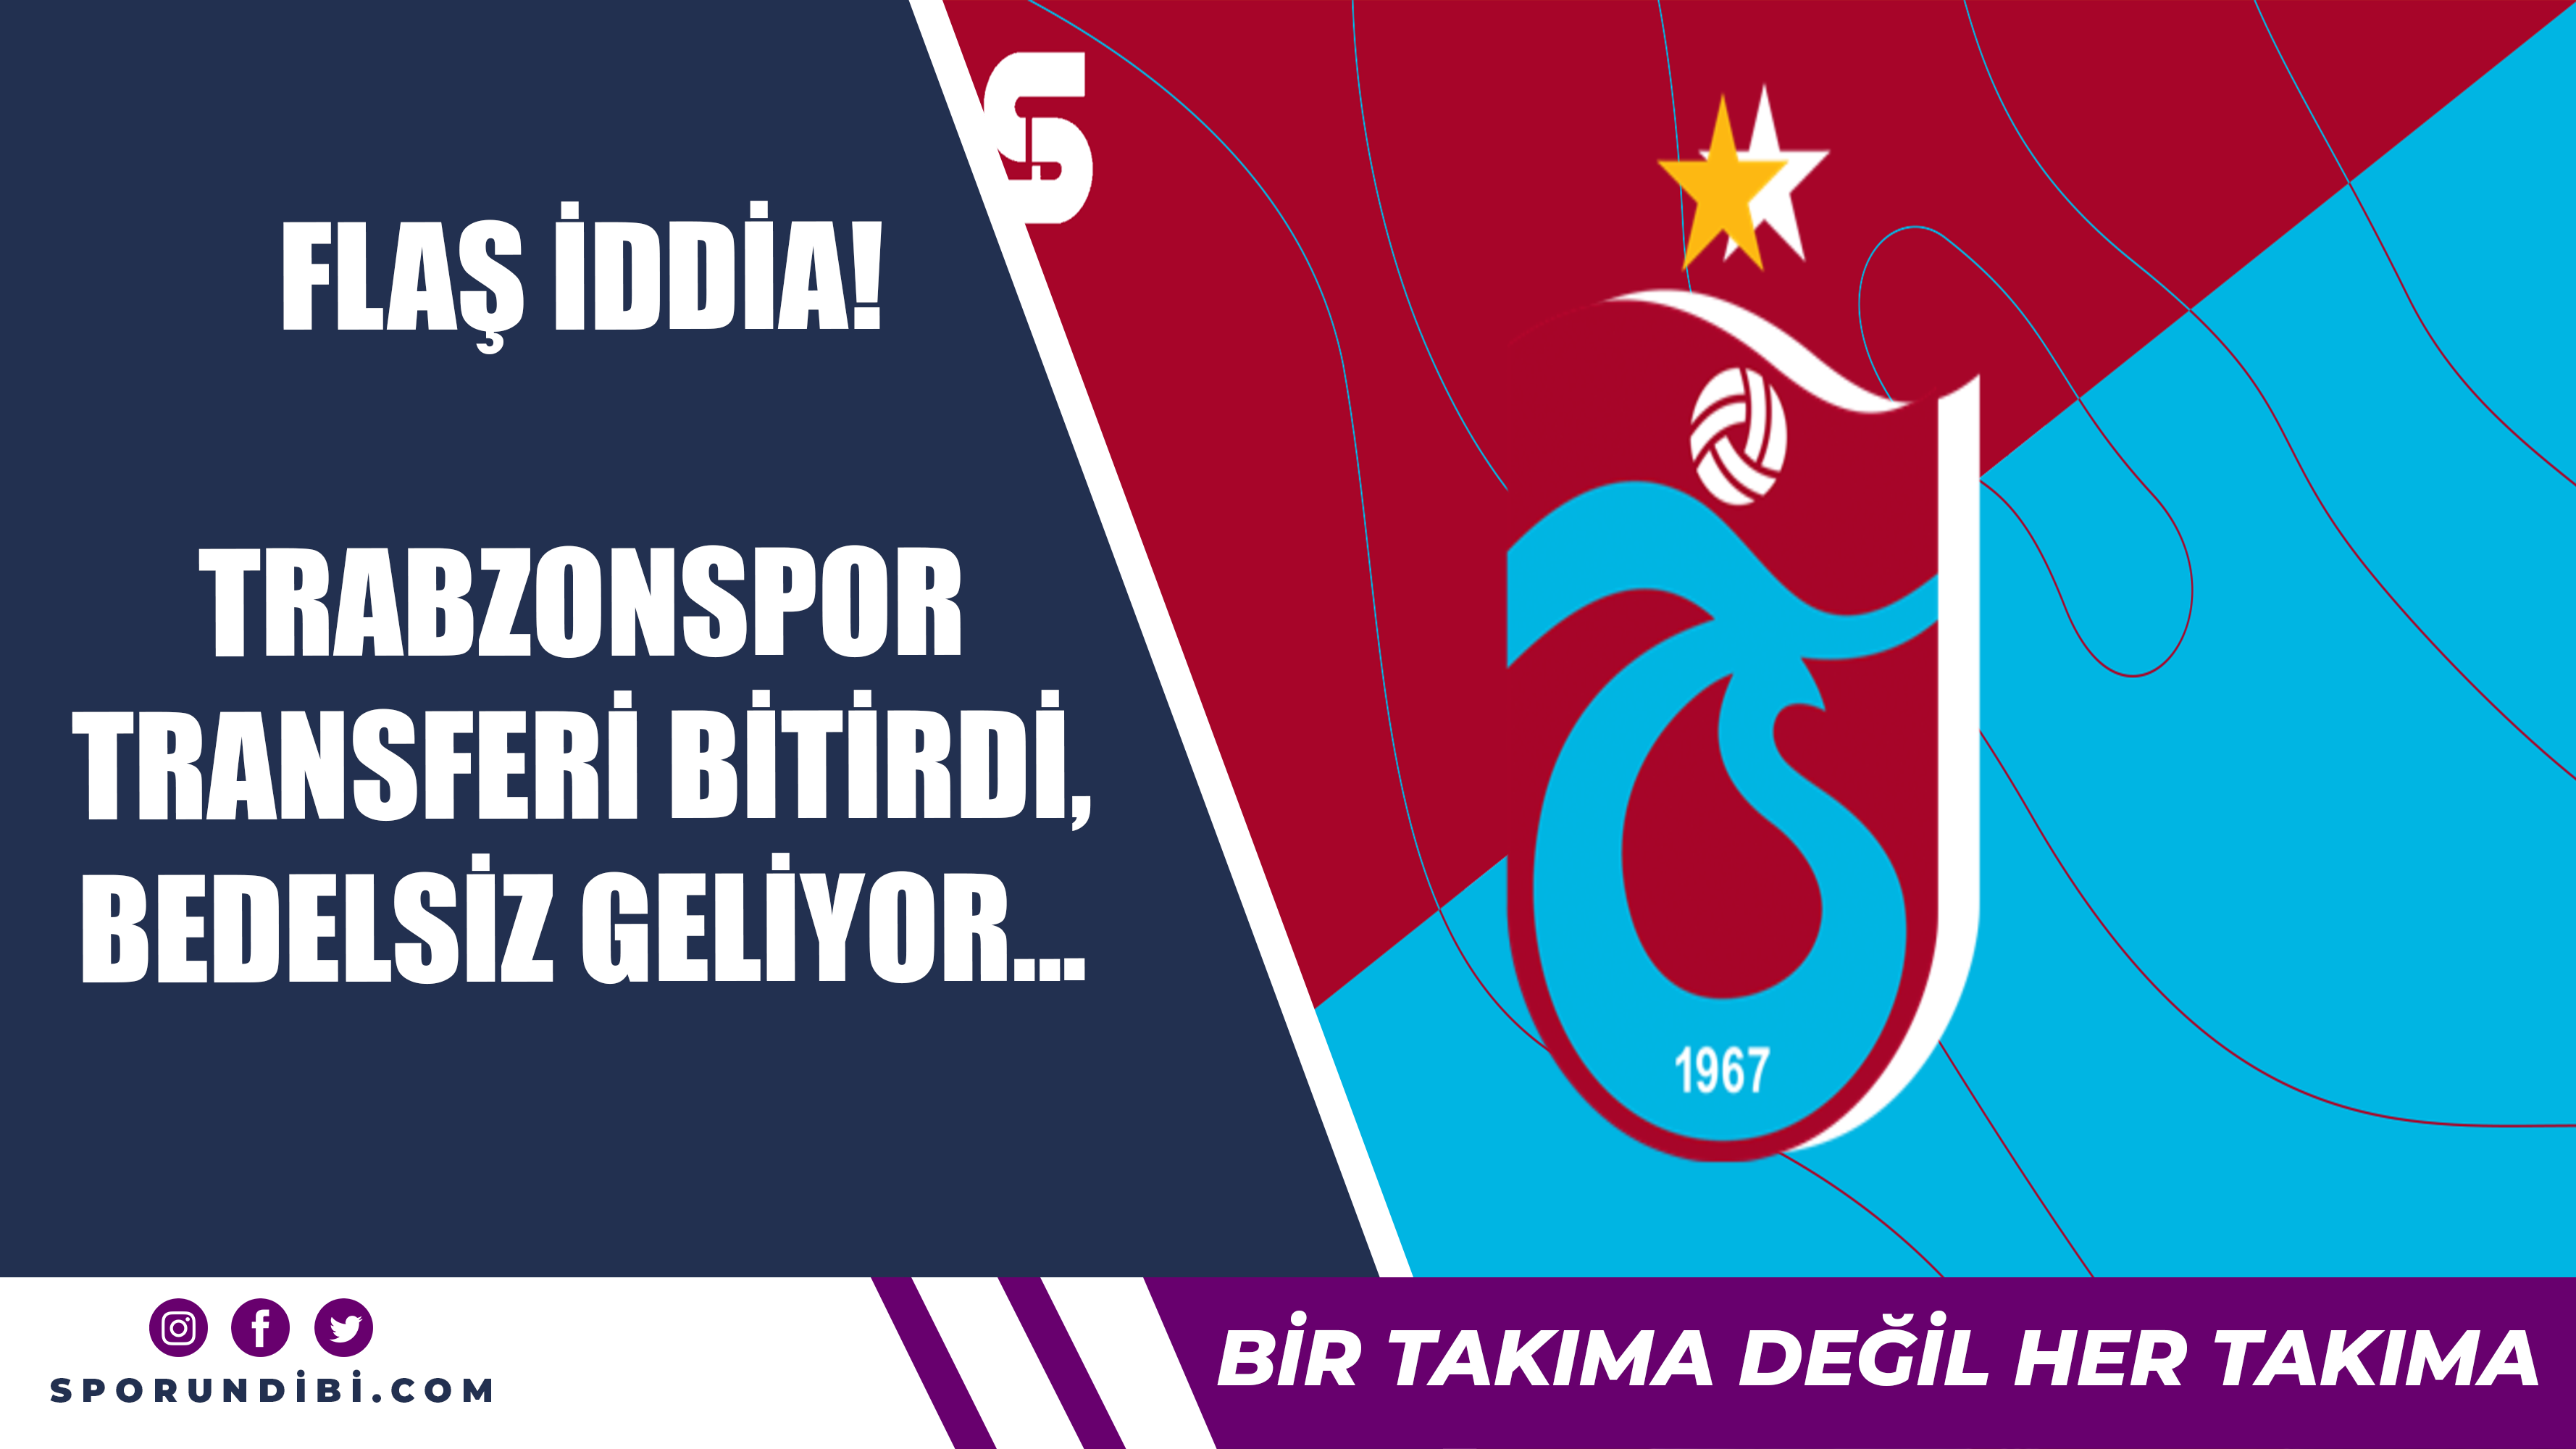 Flaş iddia! Trabzonspor transferi bitirdi, bedelsiz geliyor!